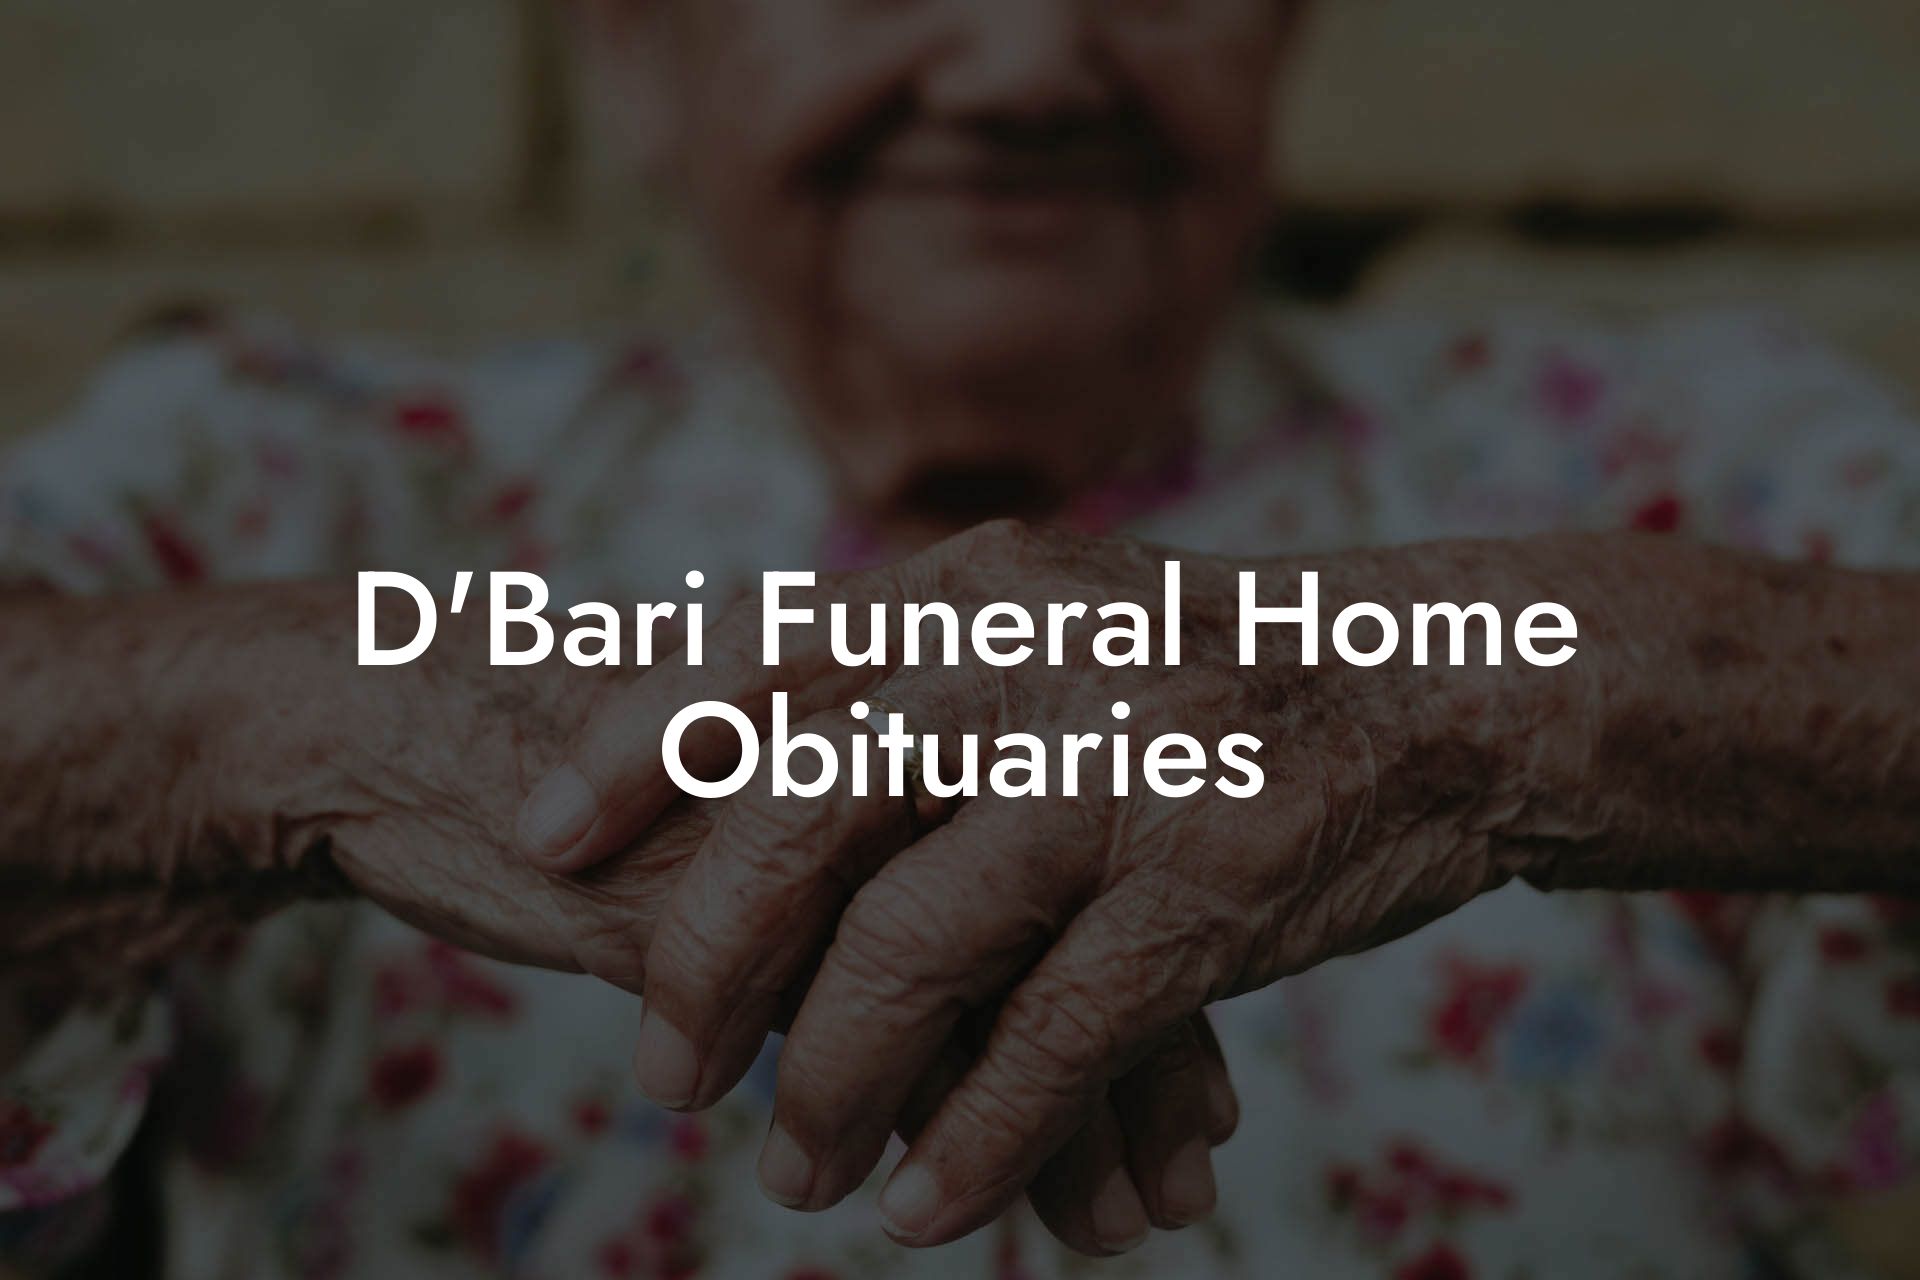 D'Bari Funeral Home Obituaries